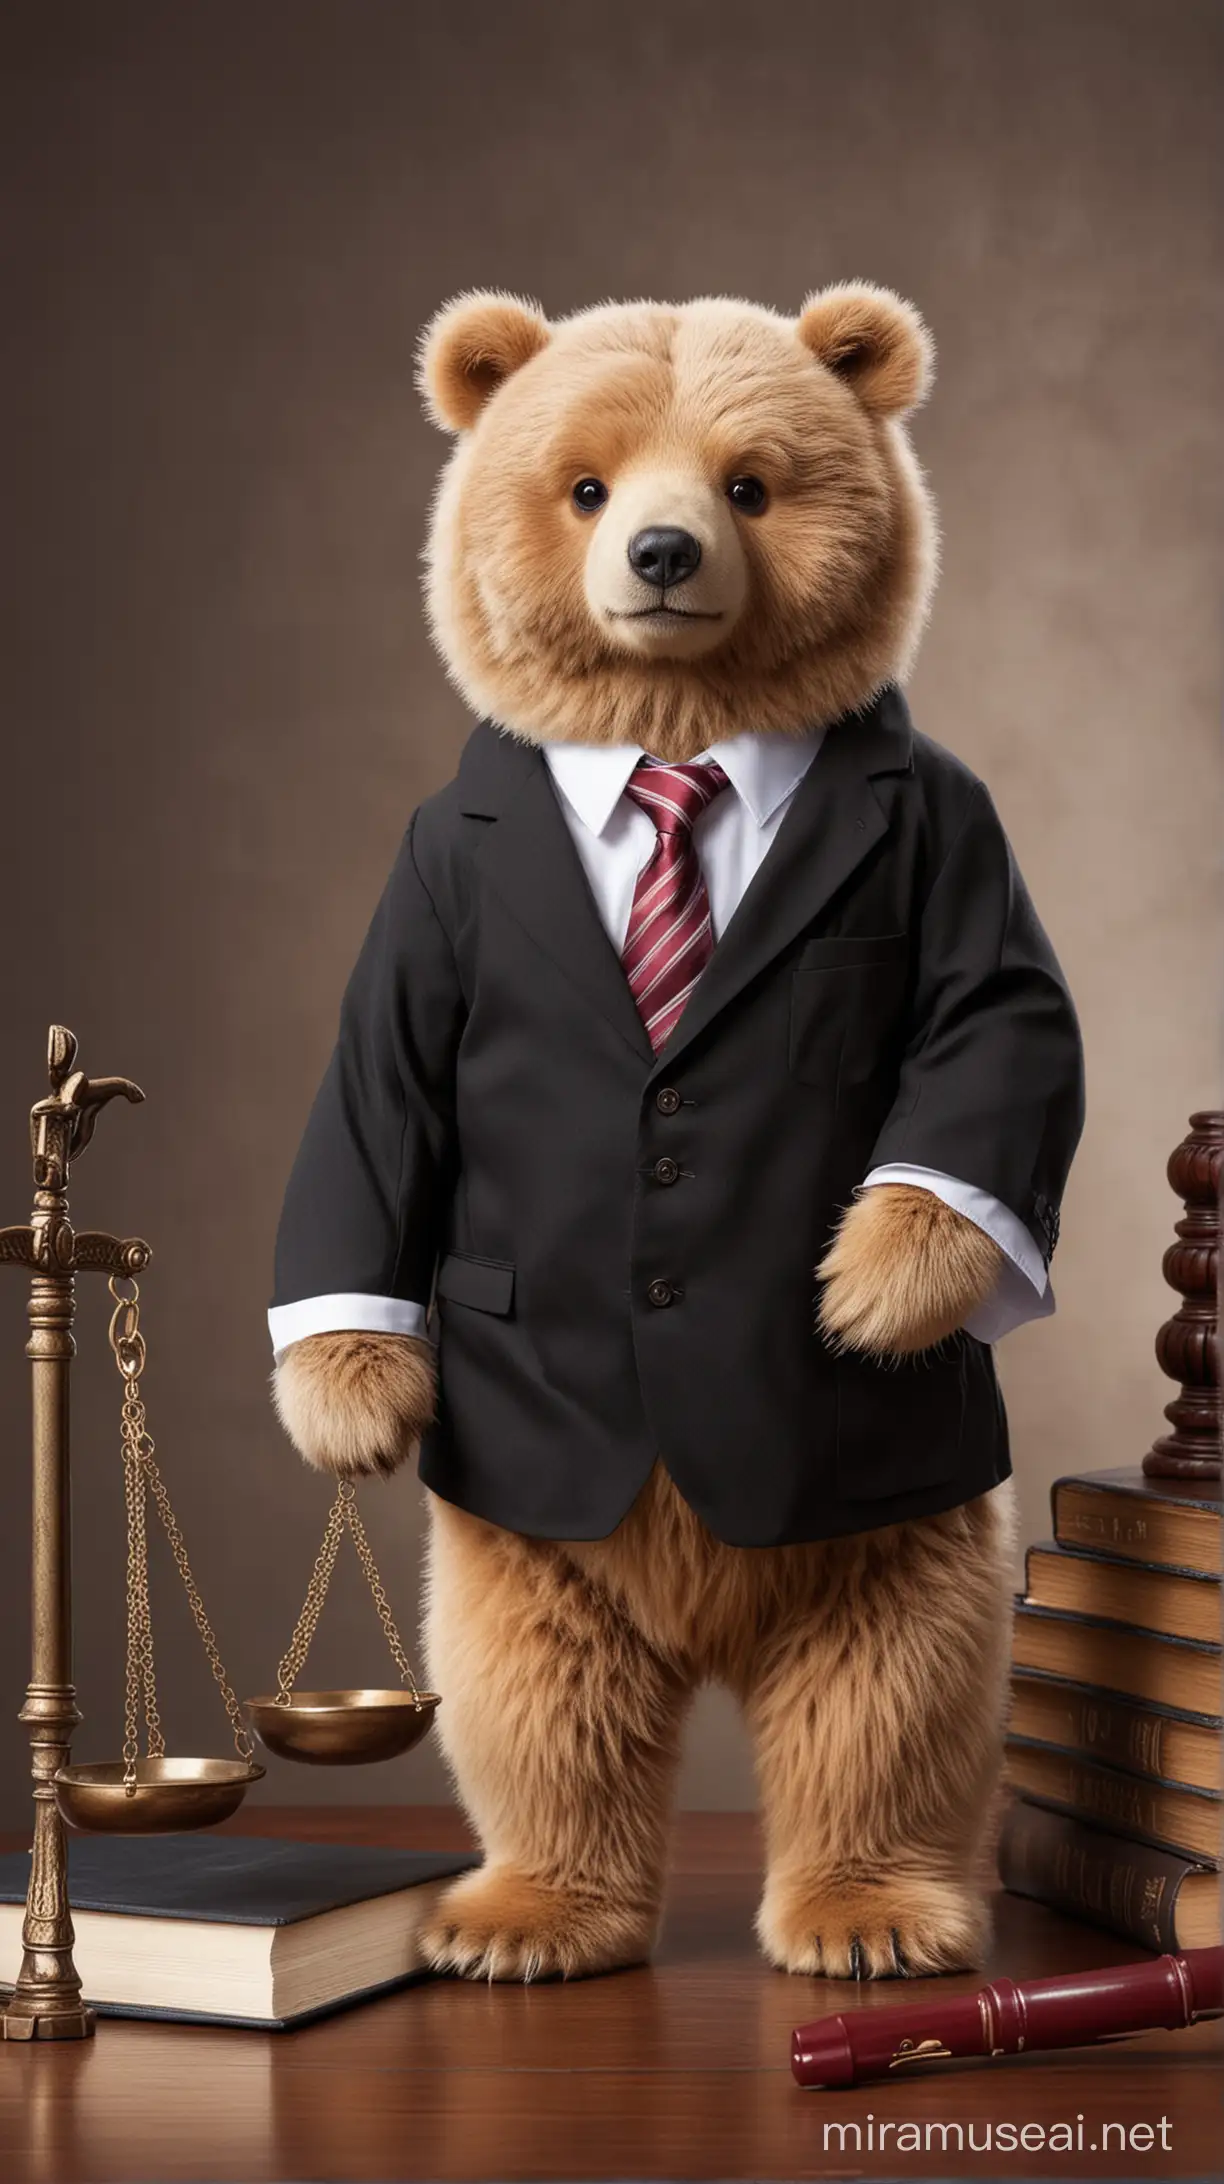 cute bear in lawyer attire
